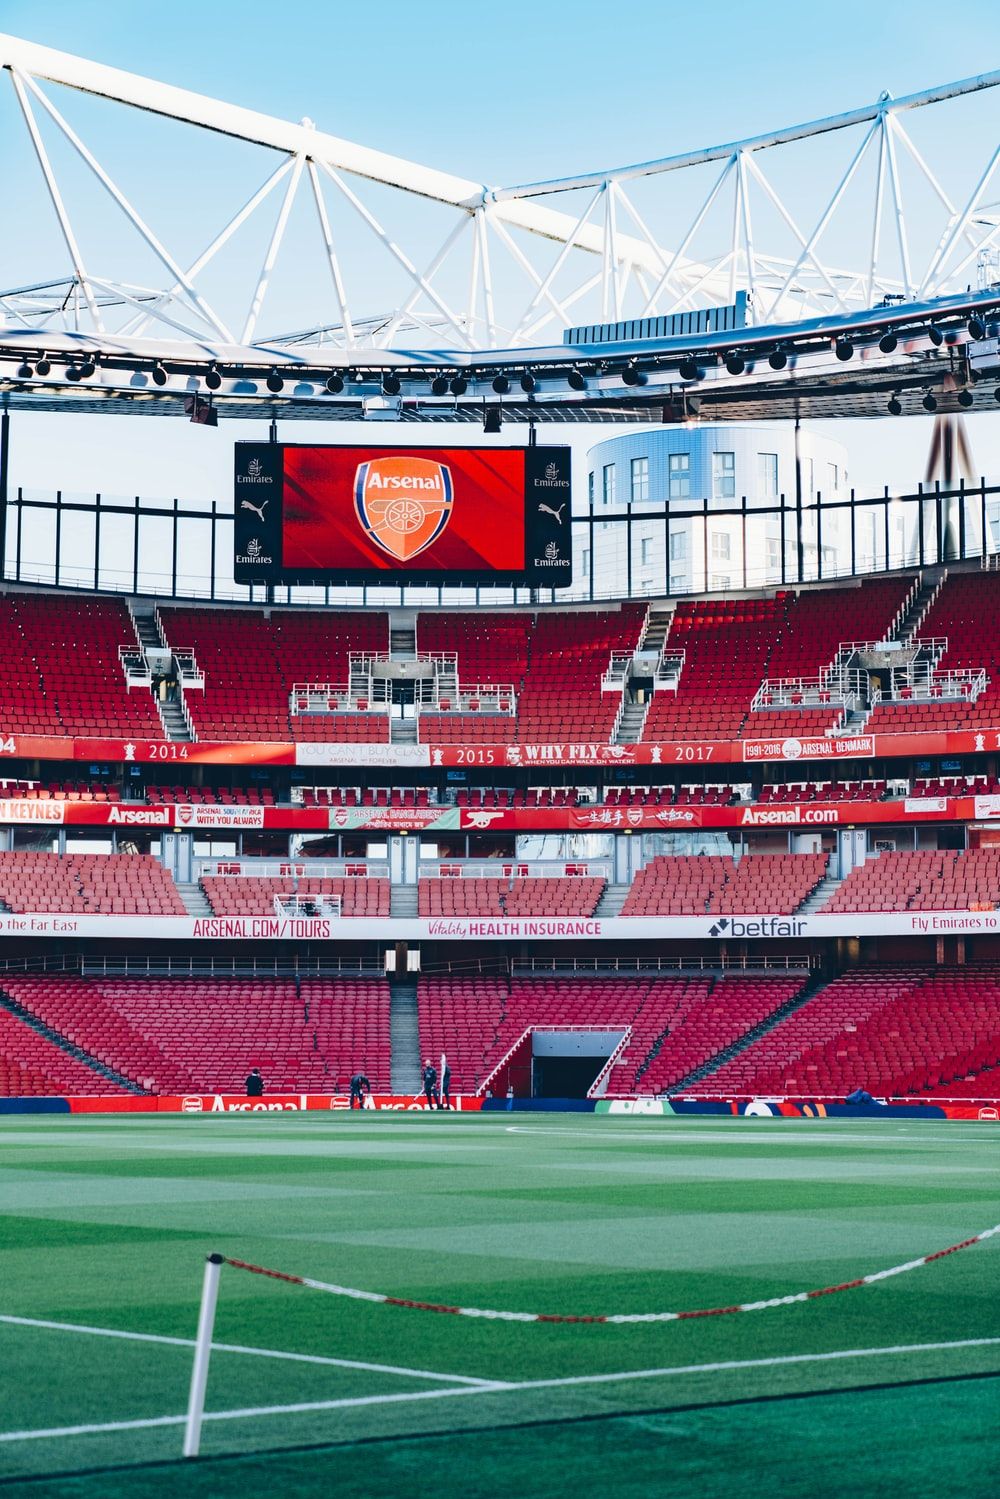 Emirates Stadium Picture. Download Free Image